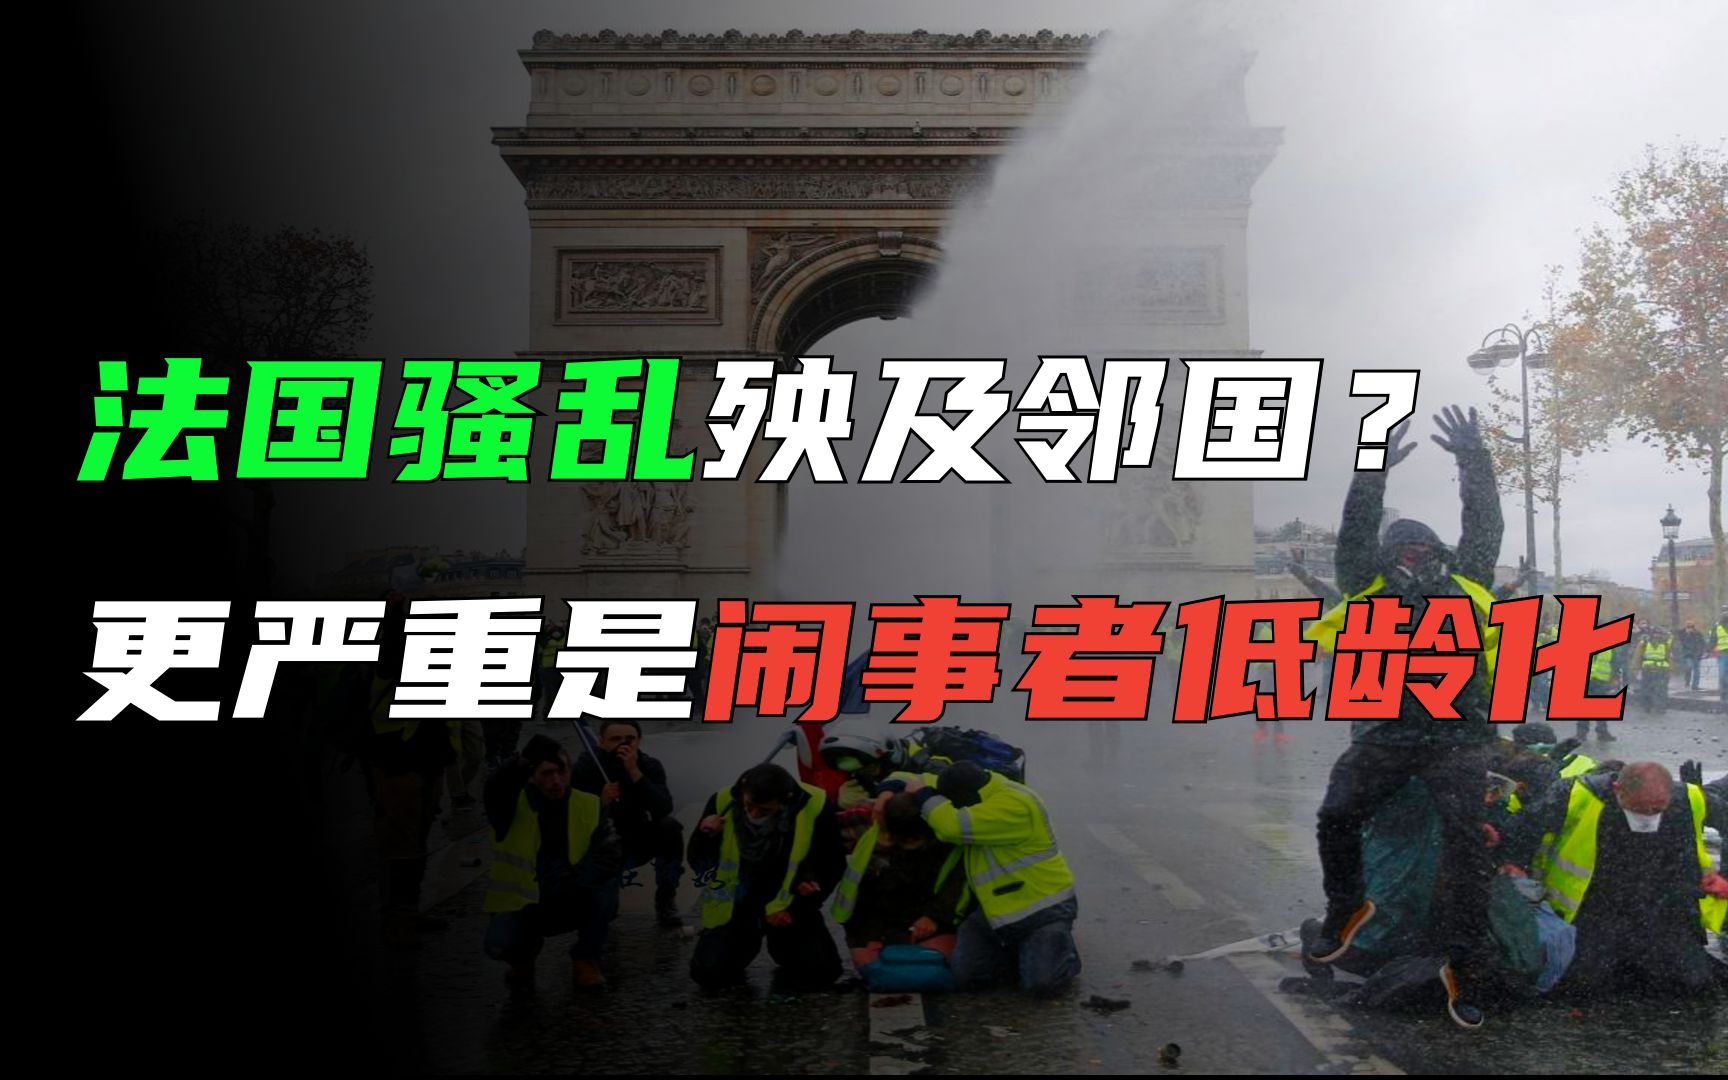 法国暴力抗议延至第二夜 警方抓捕180人 | 法国骚乱 | 新唐人电视台